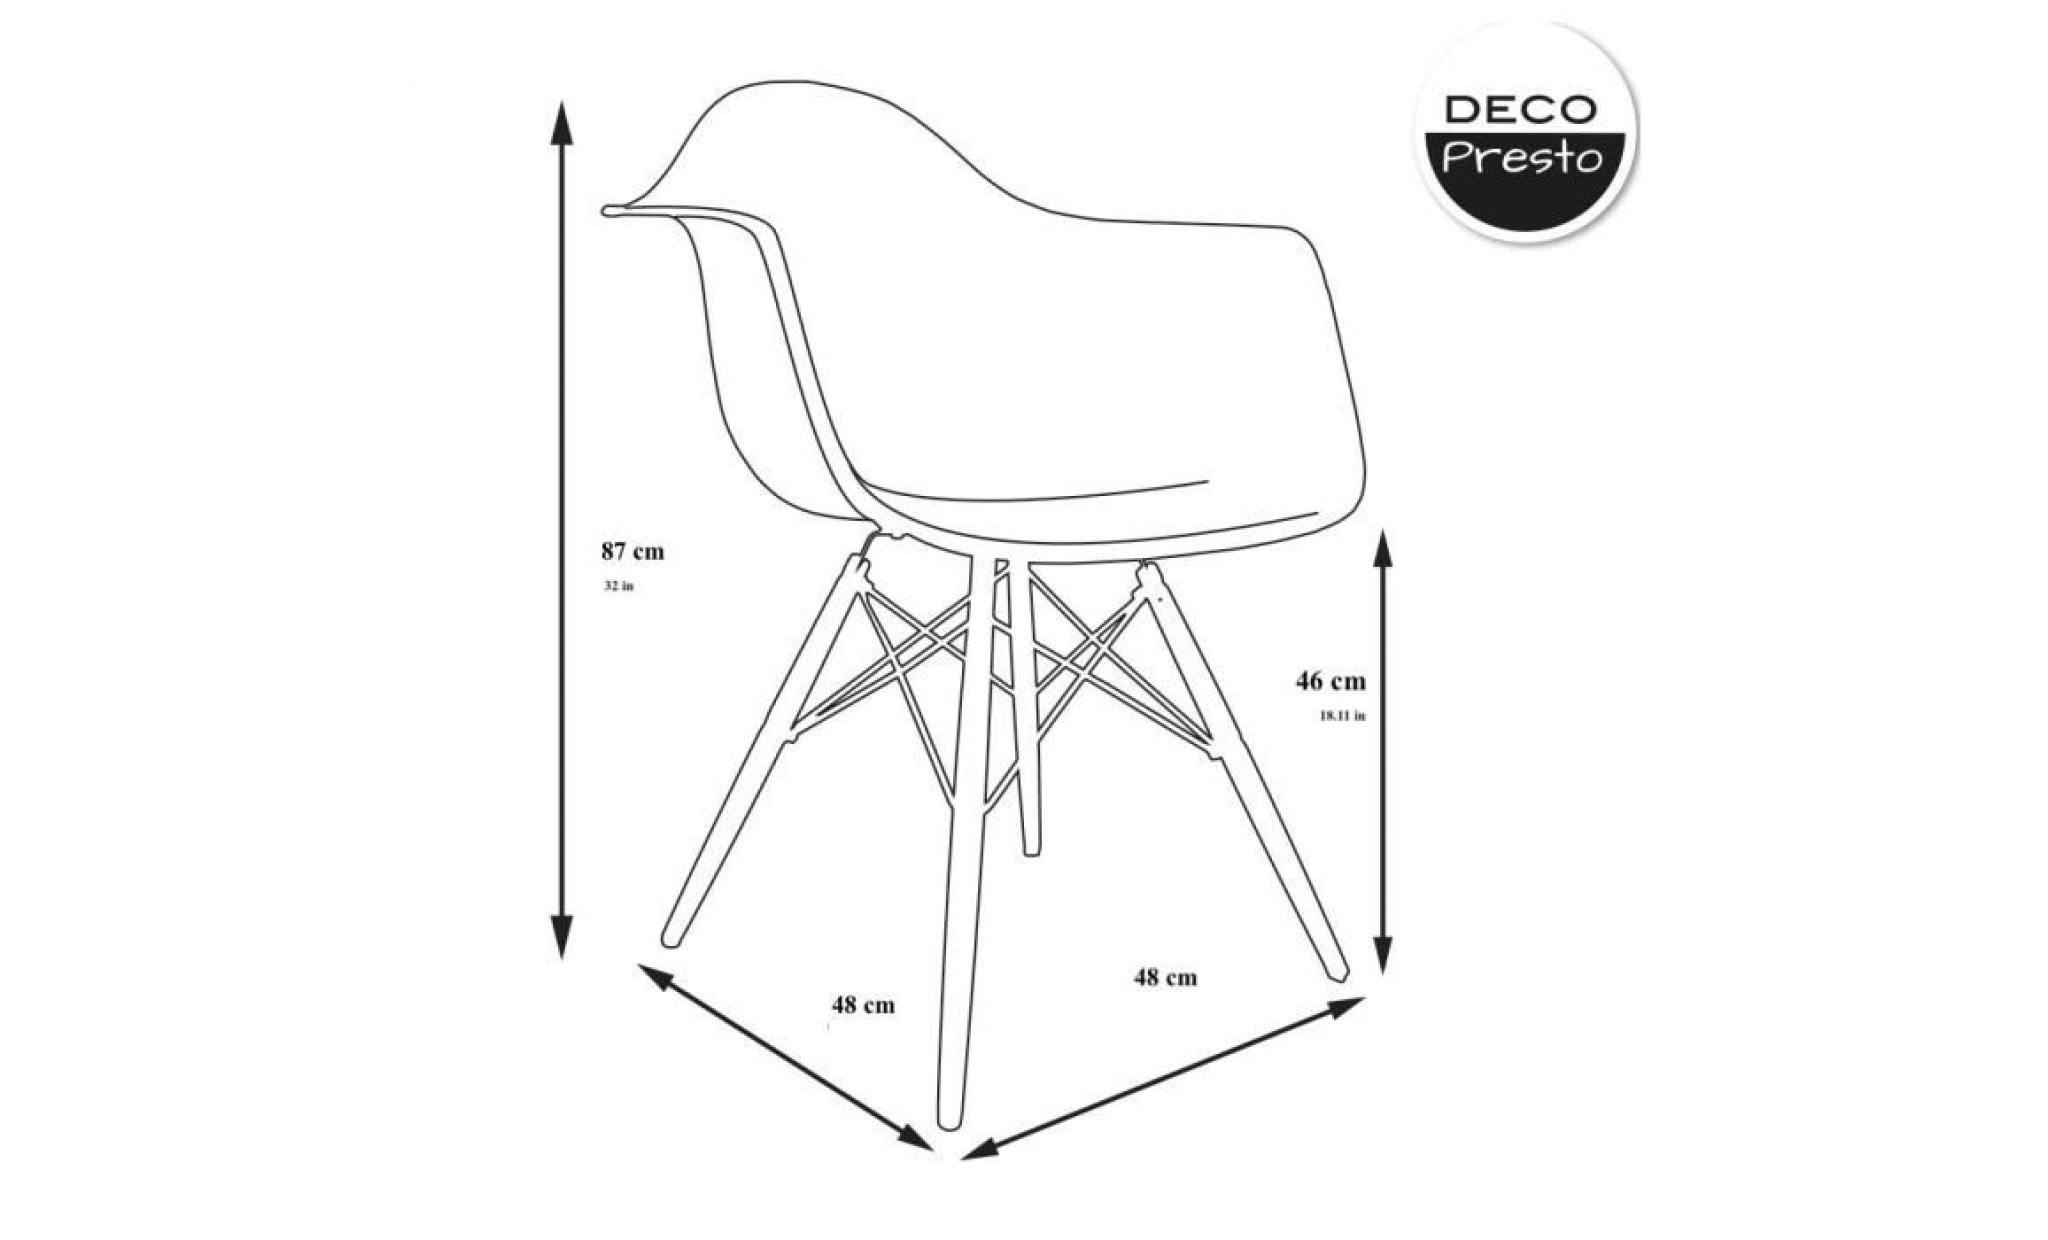 1 x fauteuil design scandinave  blanc pieds: bois naturel decopresto dp dawl wh 1 pas cher